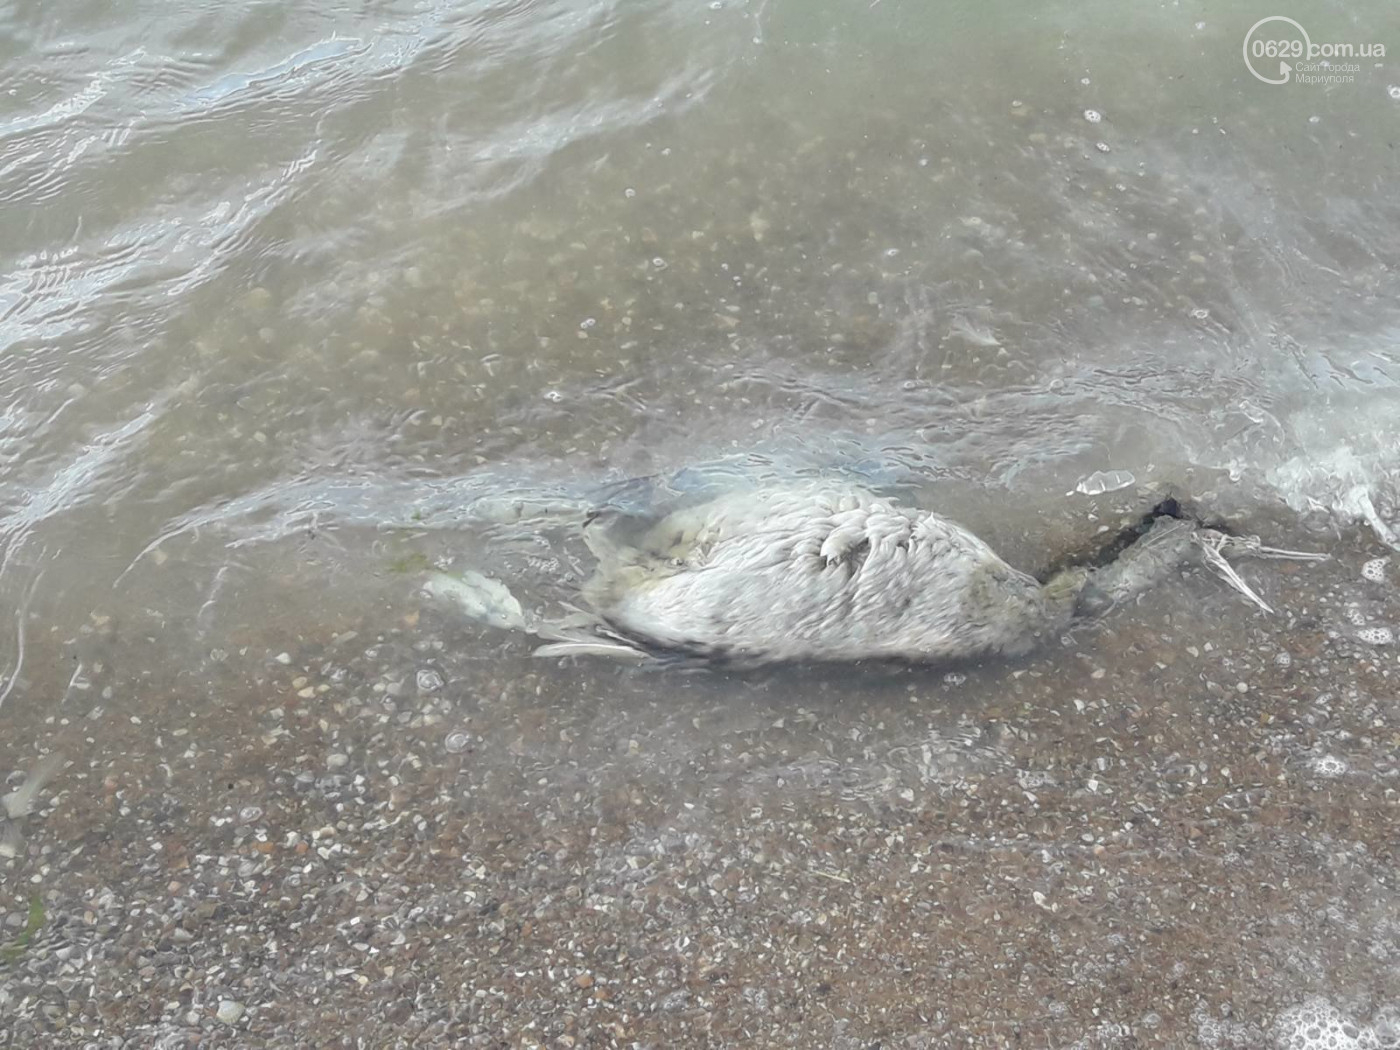 На одном из пляжей Мариуполя обнаружили мертвых птиц: фото